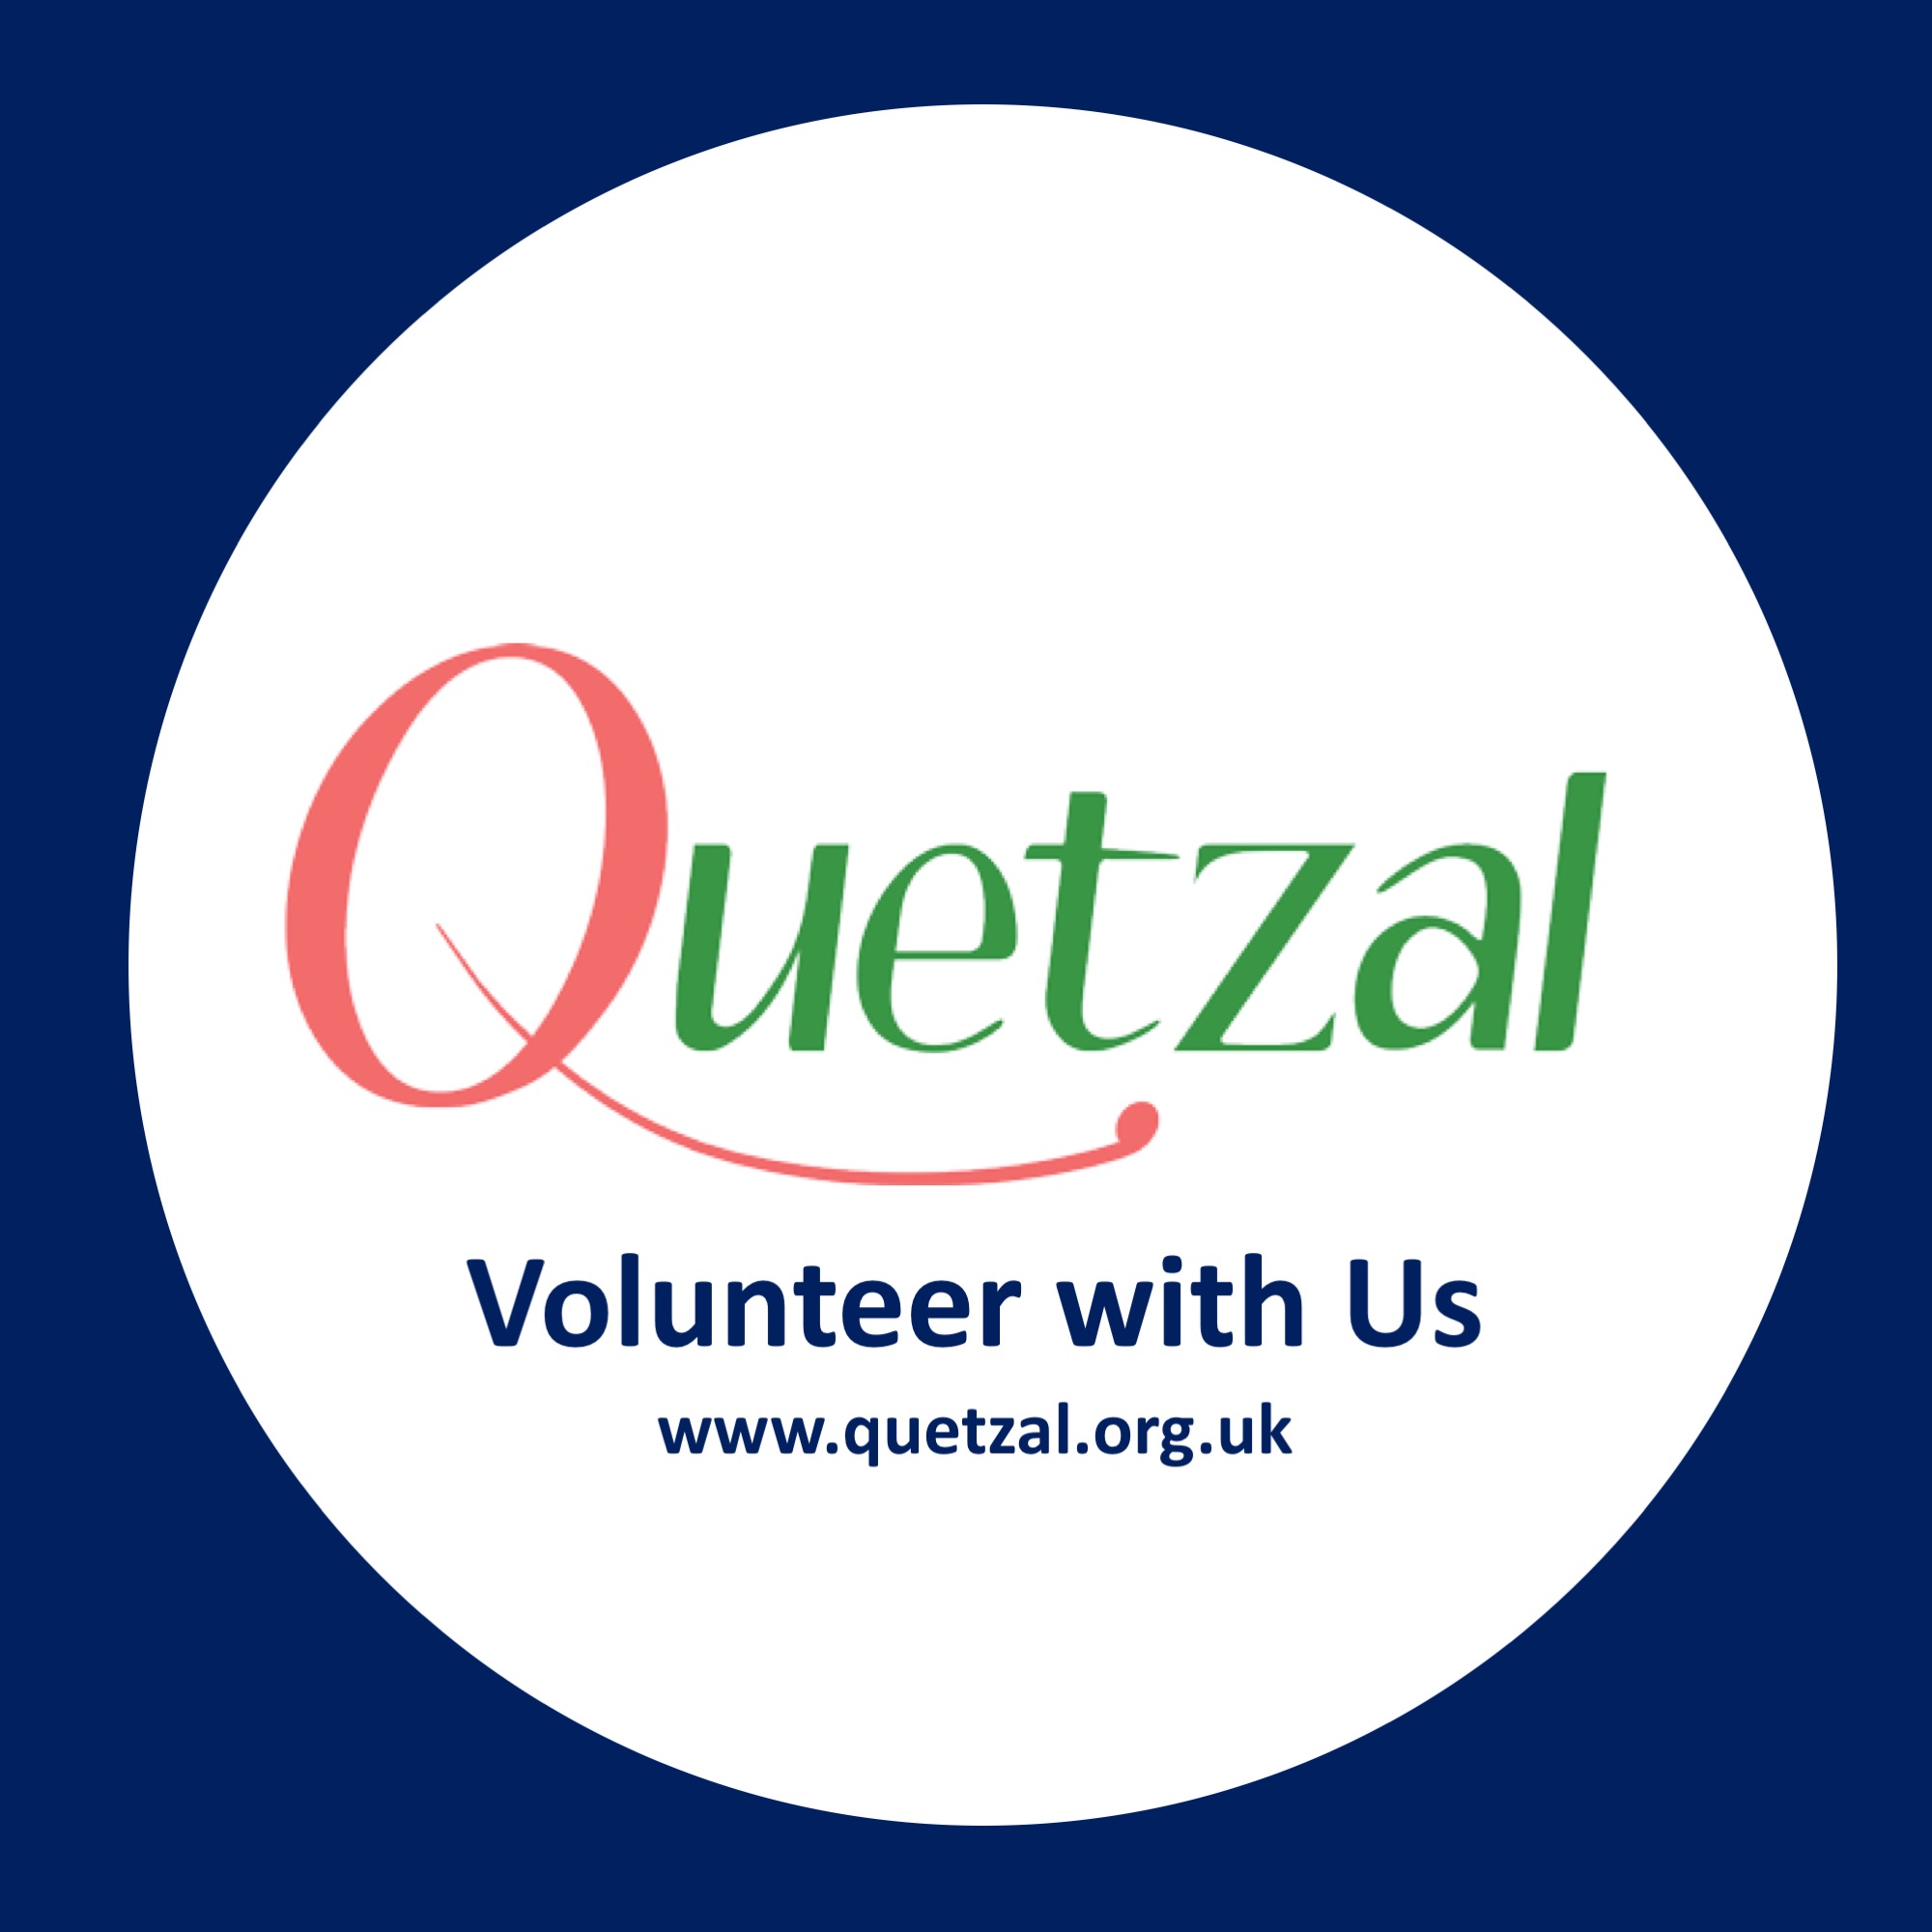 Student Volunteering Week 2022 – Get Volunteering with us